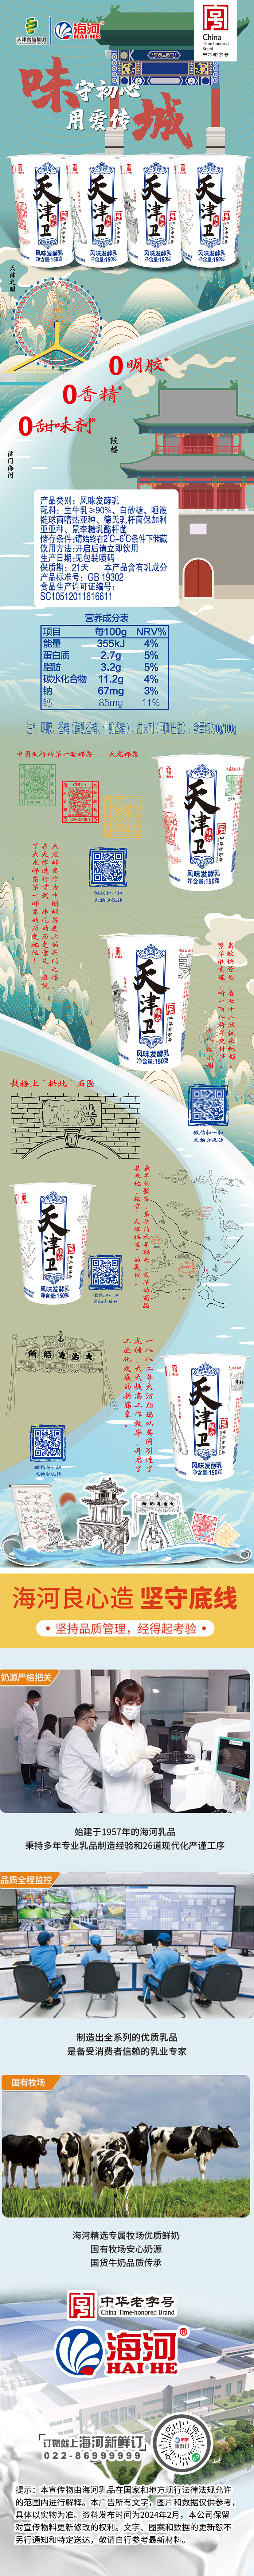 天津卫酸奶-博物馆联名-01.jpg